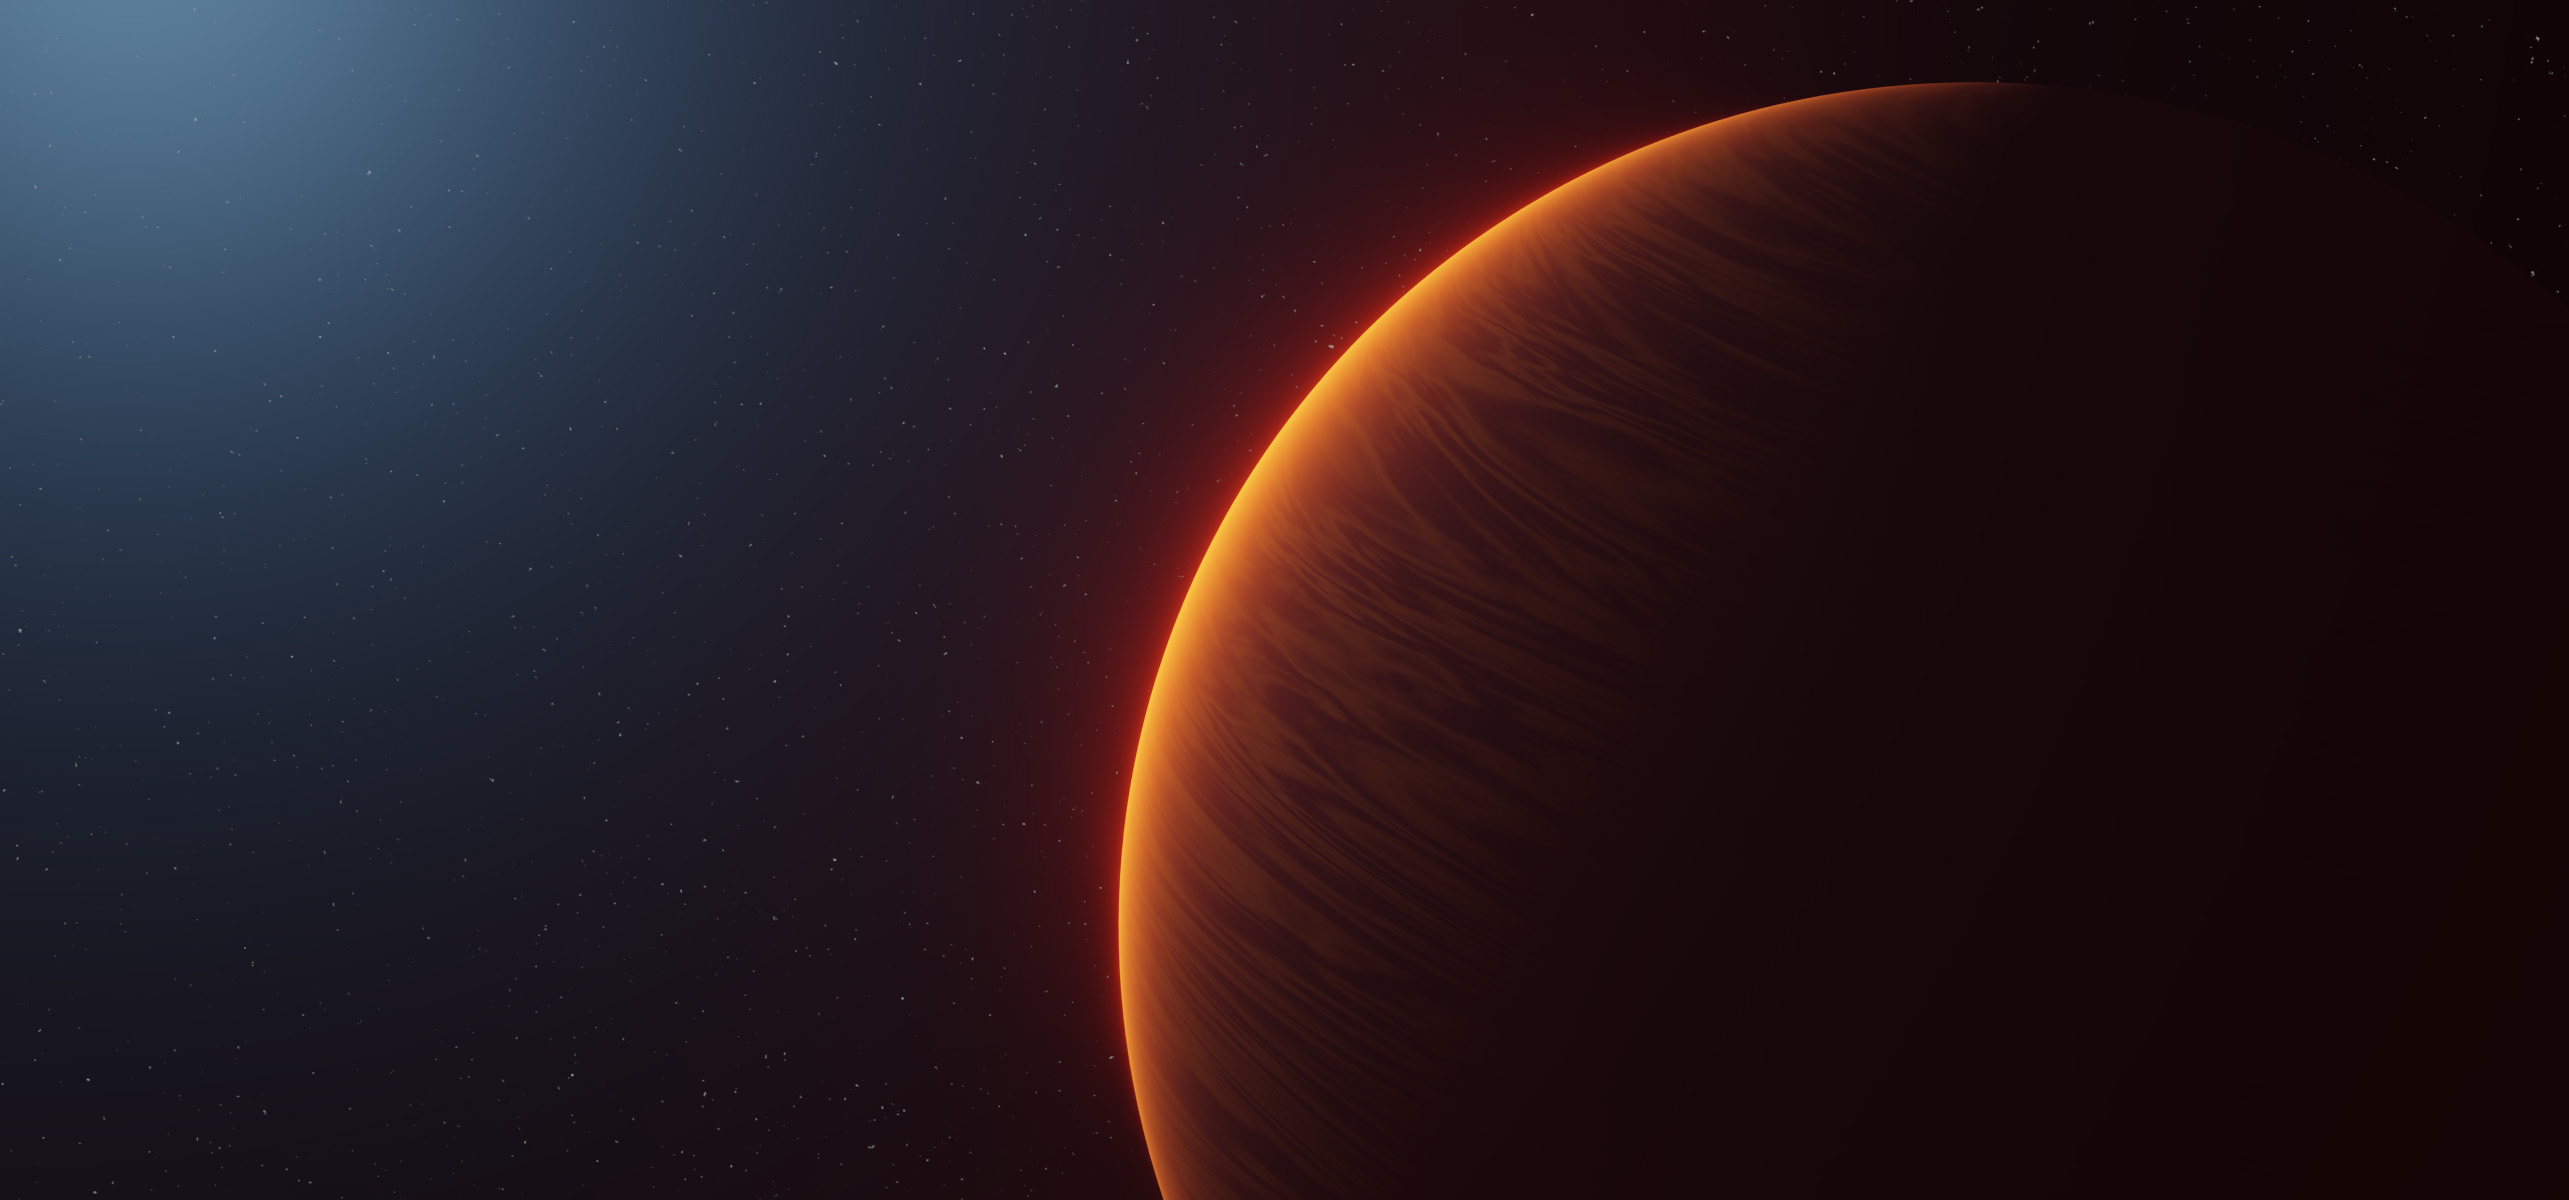 Künstlerische Darstellung des Exoplaneten WASP-189b, der ausserhalb des Sonnensystems den Stern HD 133112 umkreist, der einer der heissesten Sterne ist, um die ein Planetensystem bekannt ist.